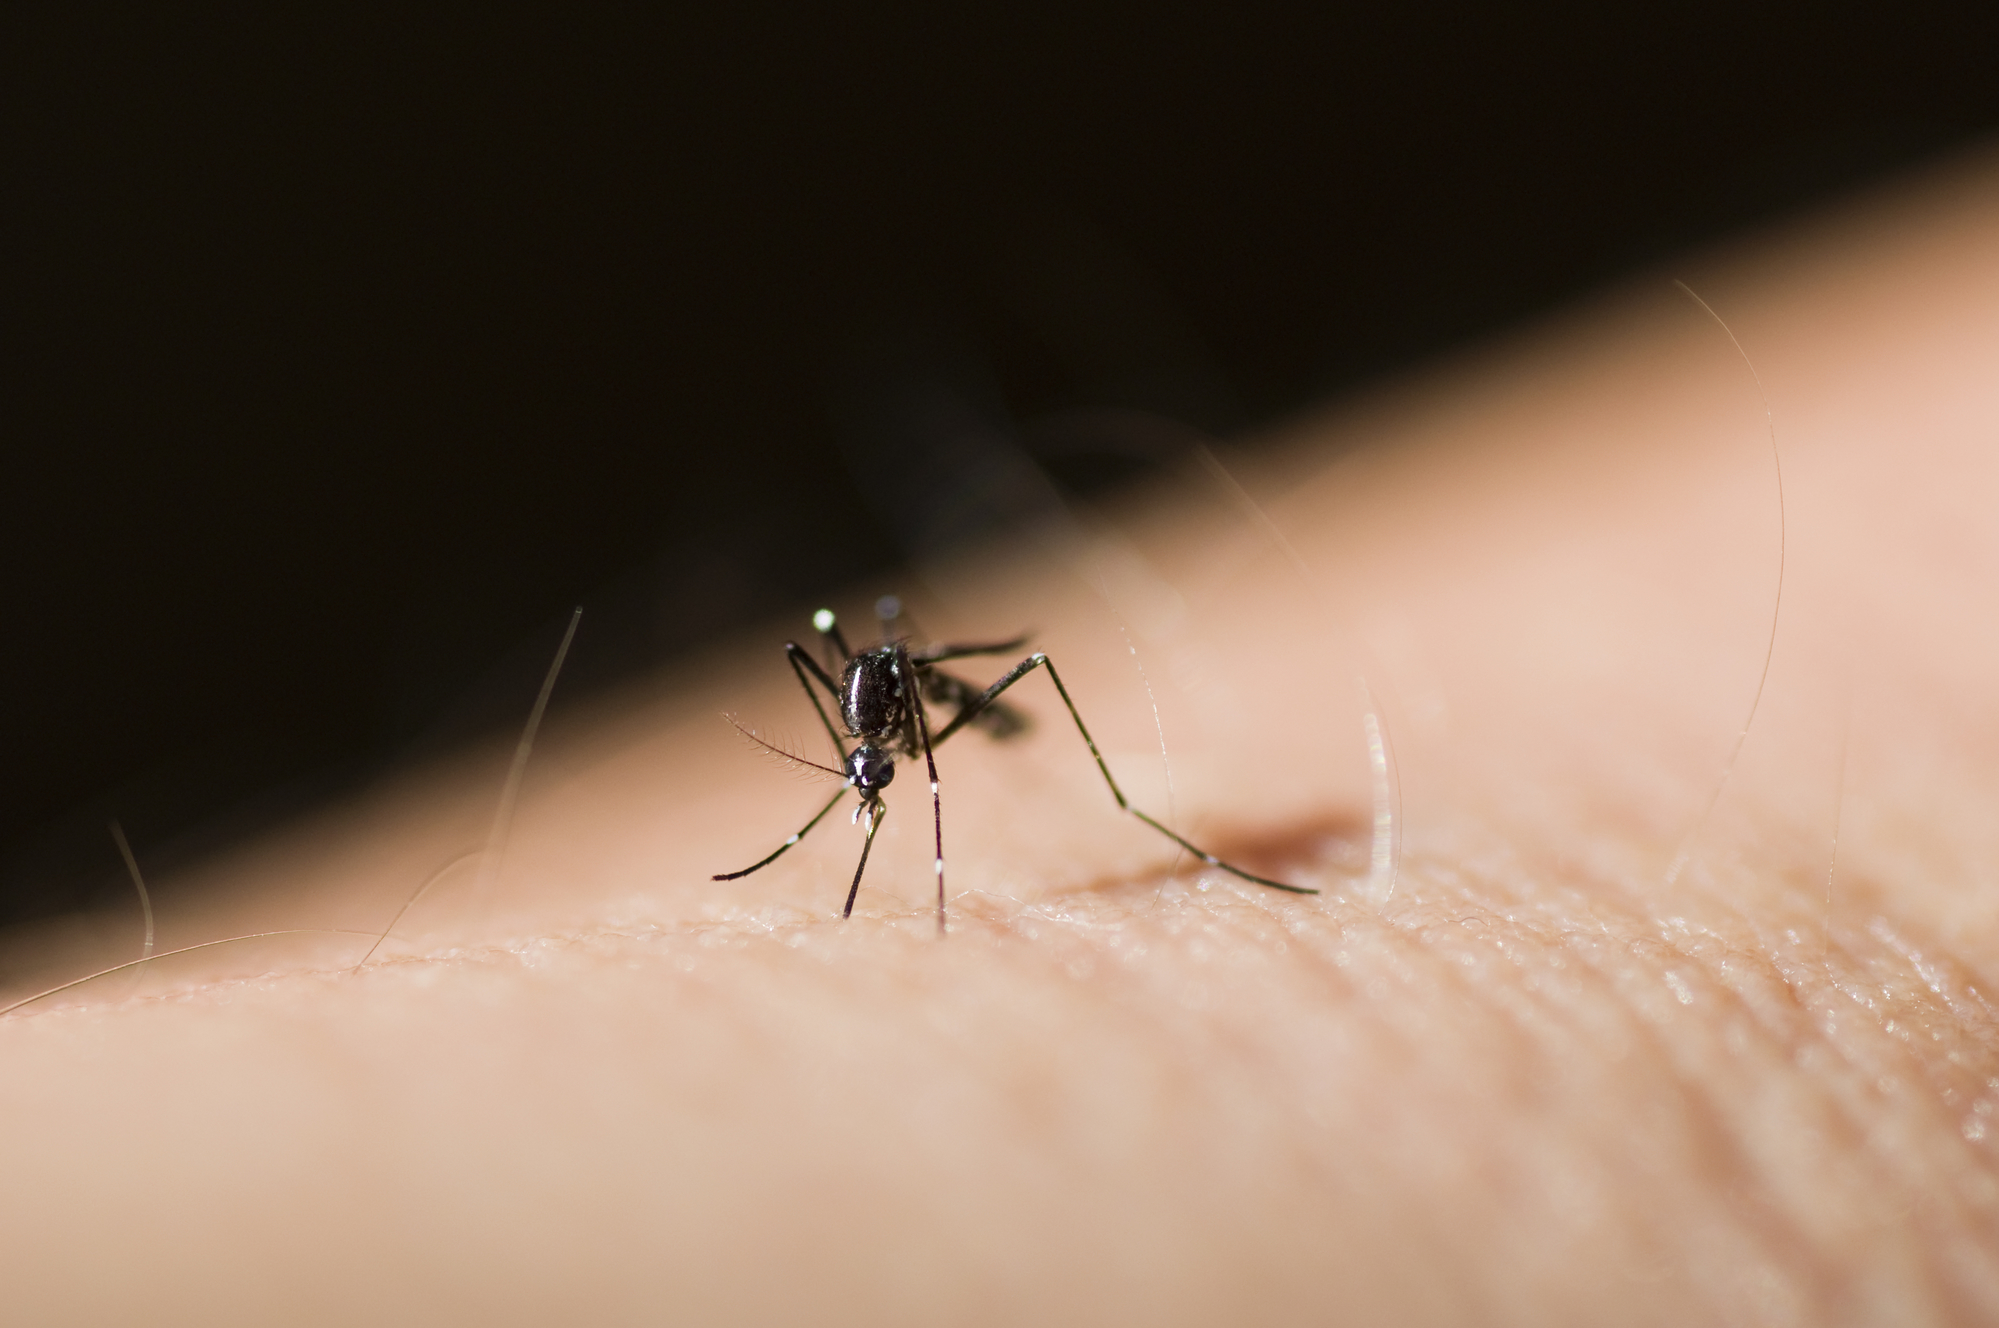 Ako vas ujede komarac, ovo su najbolji načini da zaustavite svrab!